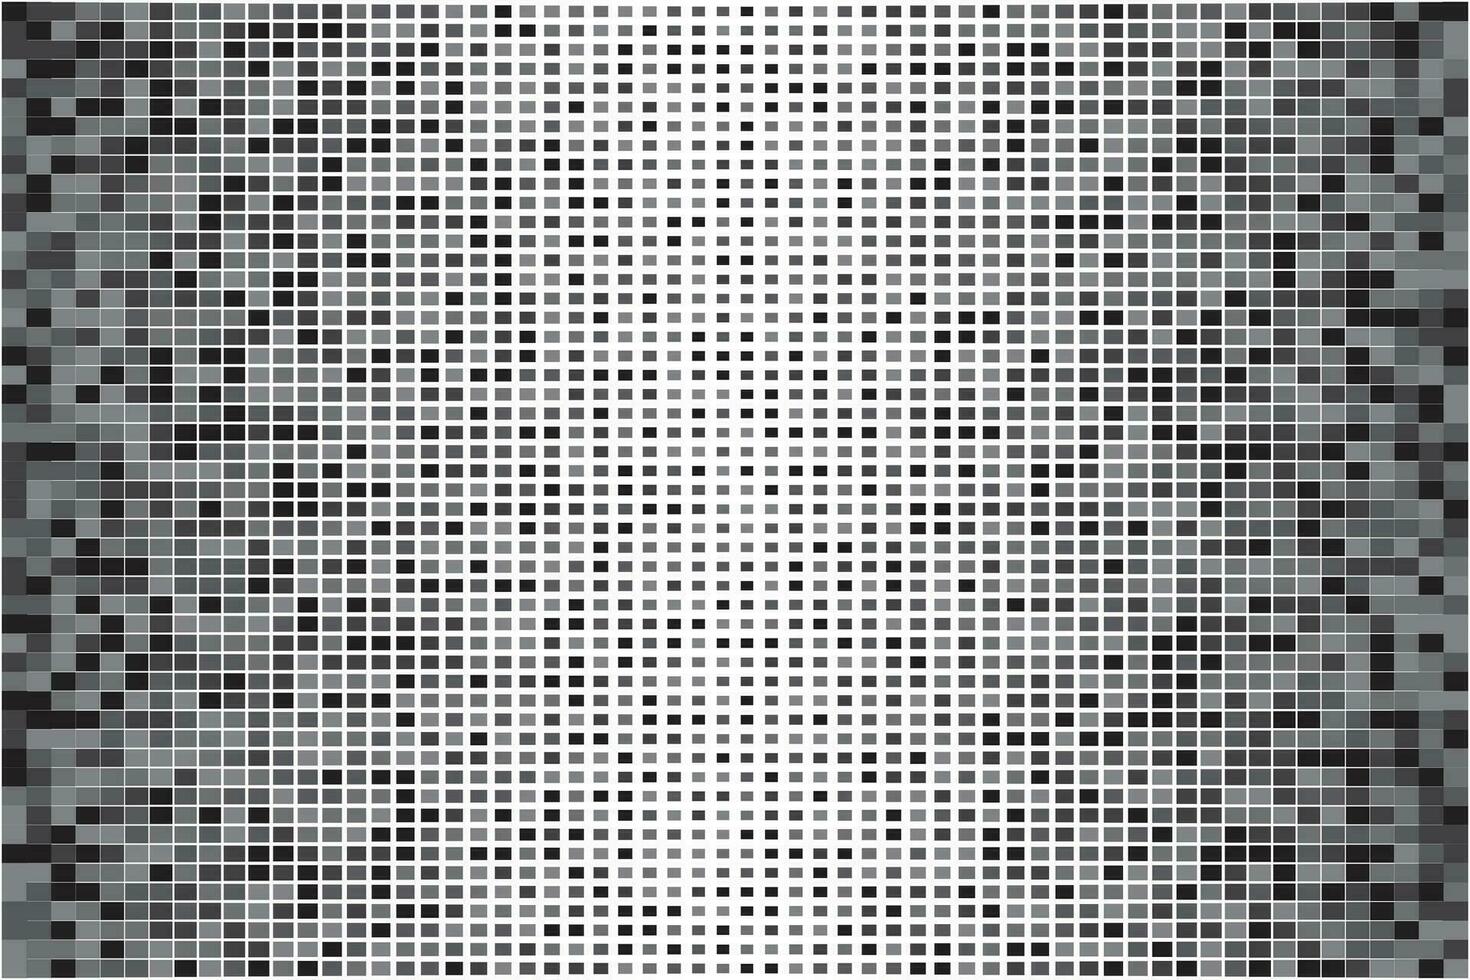 schwarz Halbton Punkt Korn Textur Pixel Pop-Art abstrakt Muster Hintergrund vektor